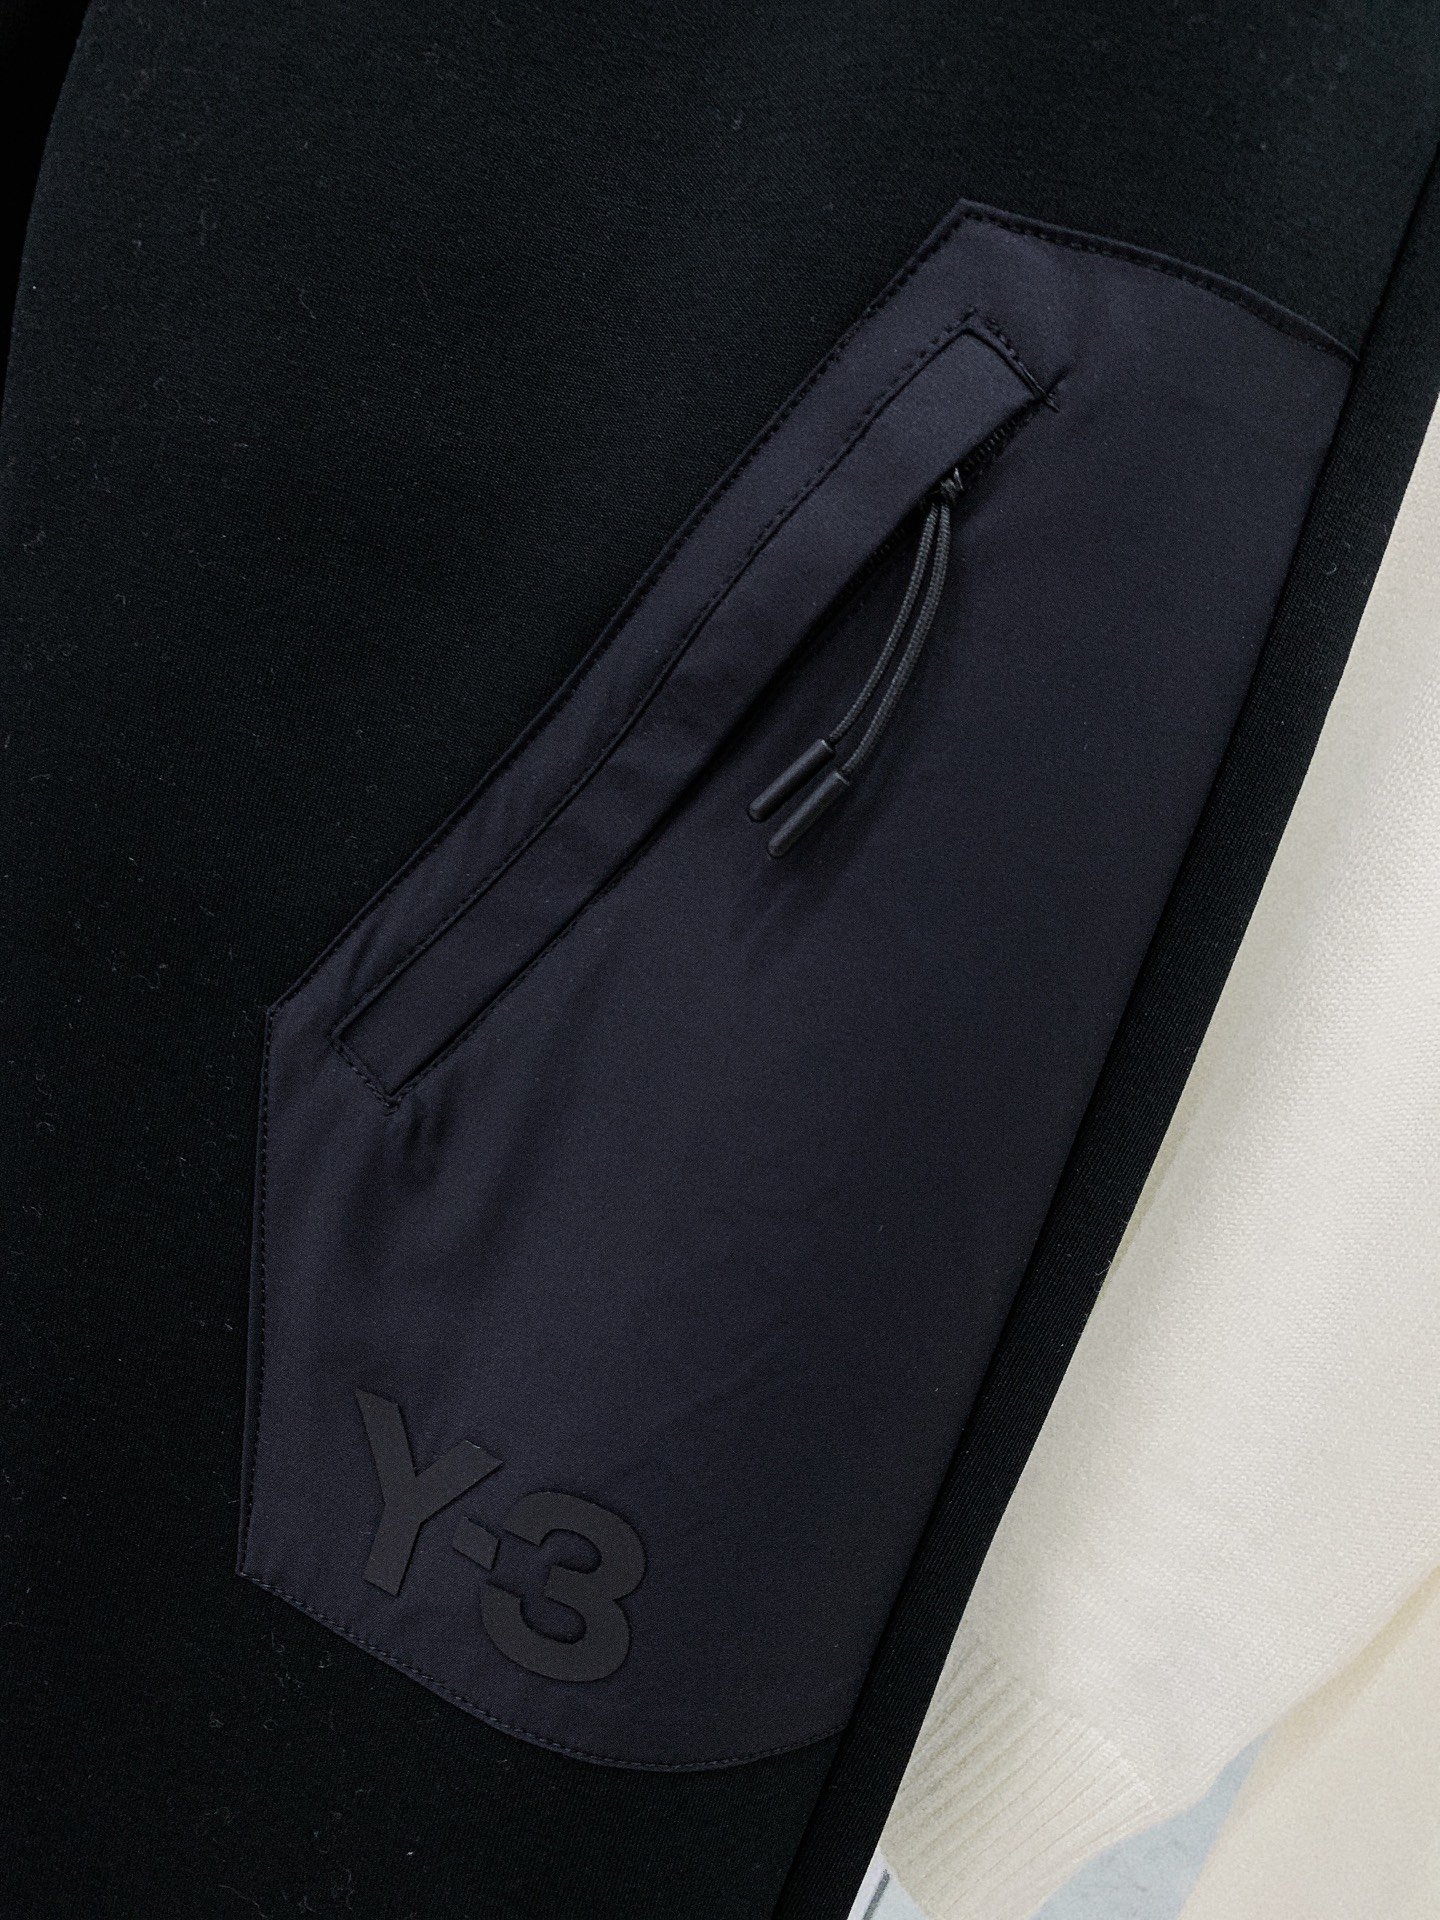 Y32023秋冬新款休闲裤！官网同步发售品牌经典LOGO休闲裤定制面料舒适度极好手触感强烈辨识度极高完美